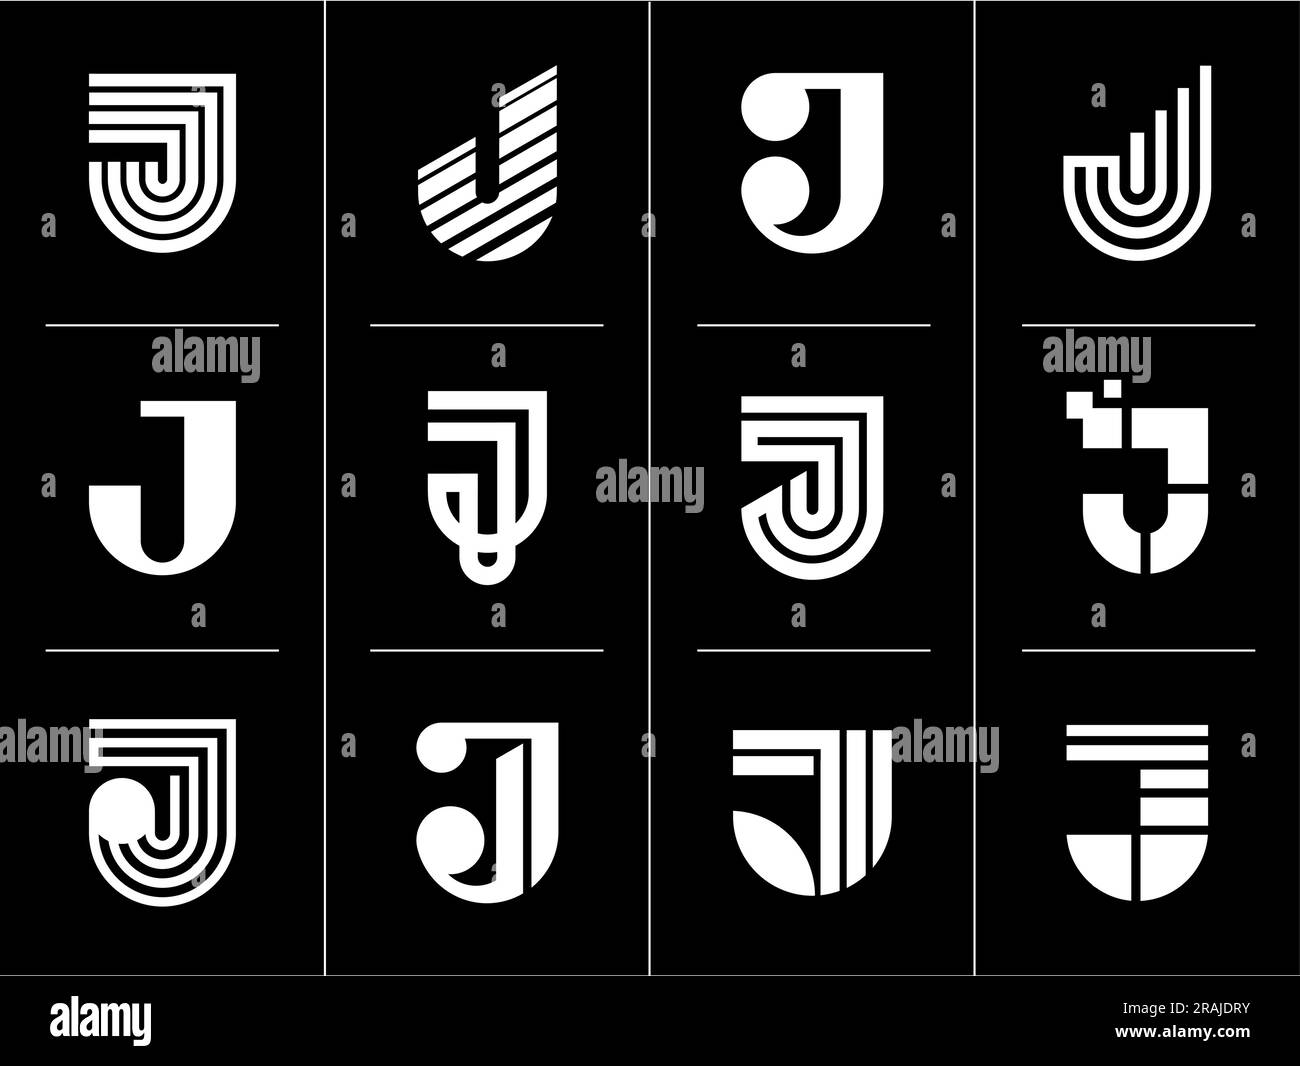 Simple business initial letter J logo design set. Modern line letter J logo. Stock Vector